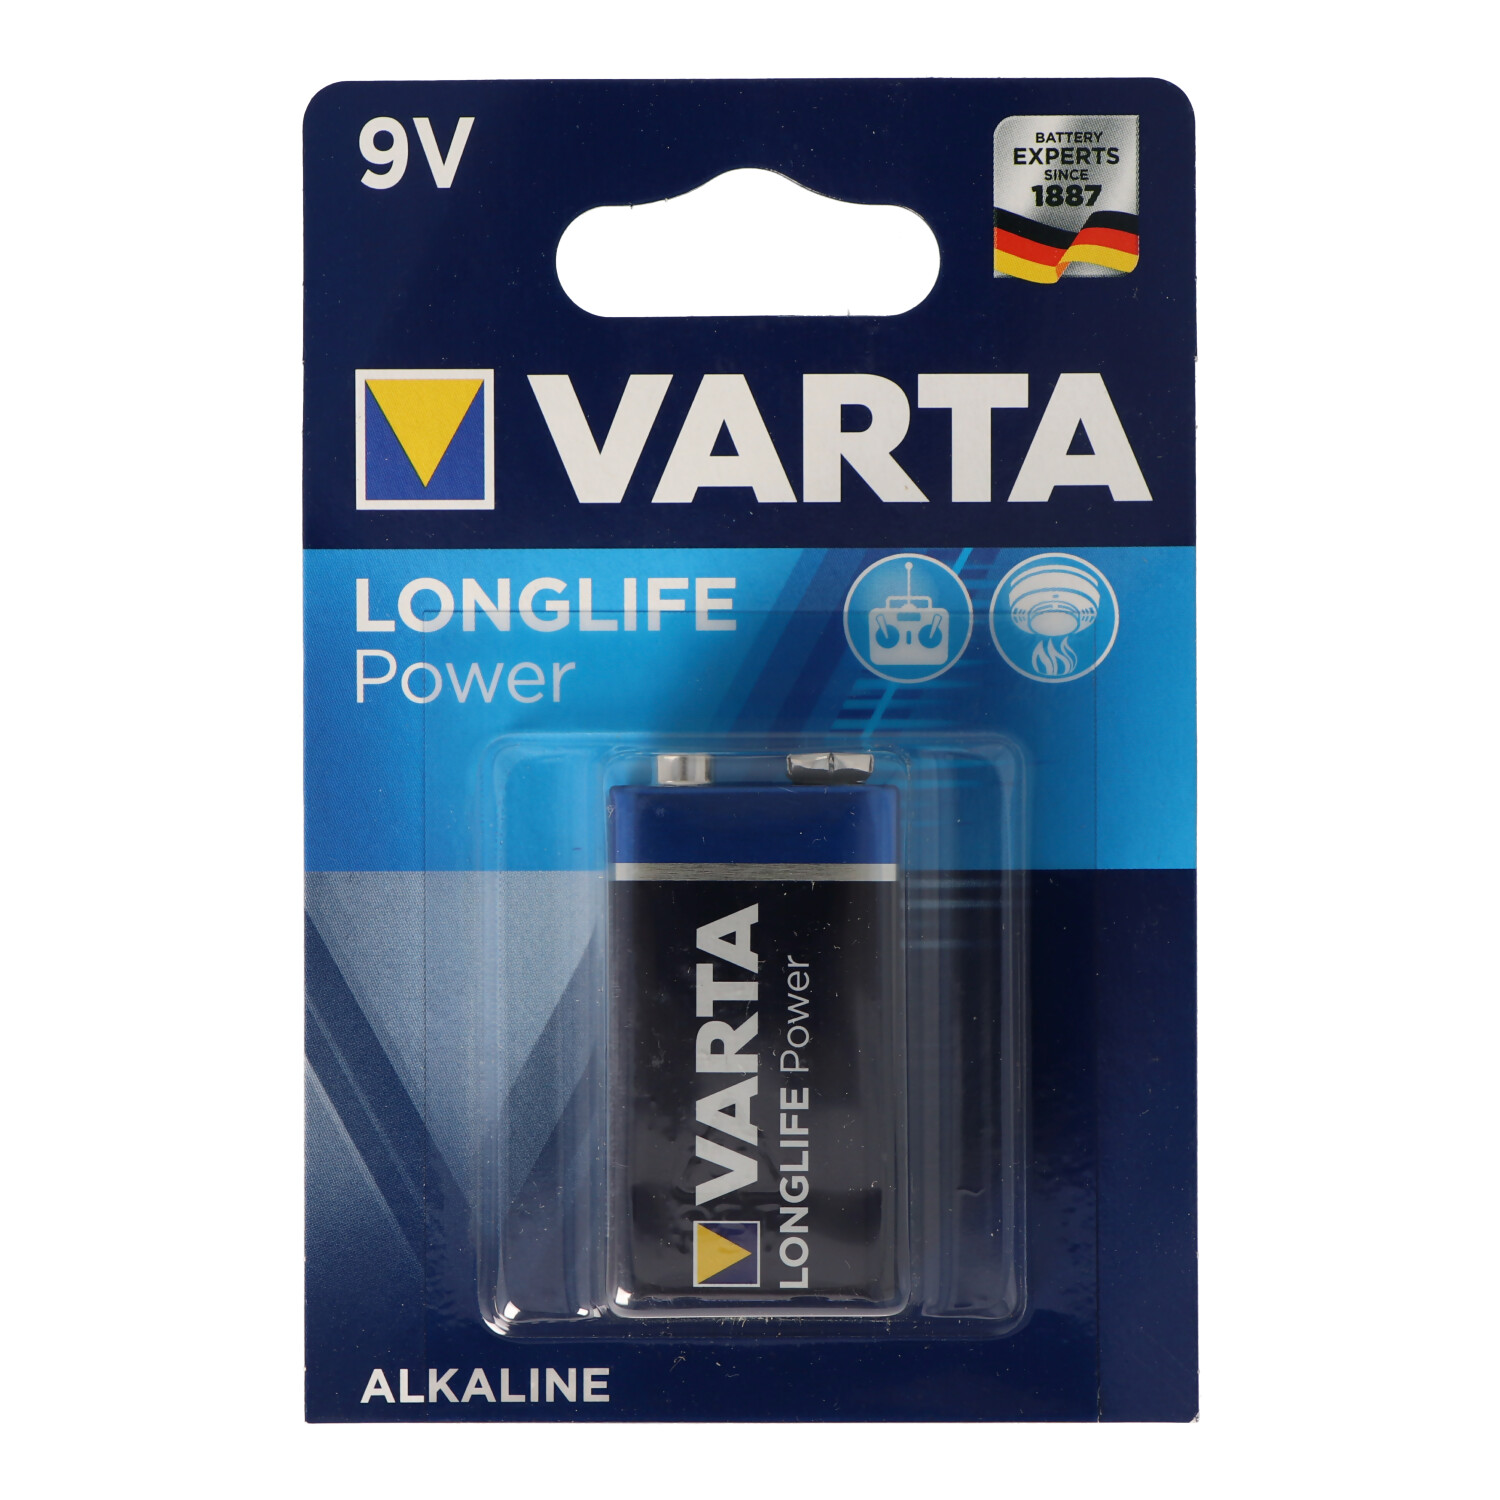 Batterie Volt, (1er Power Block 6LR61 AlMn, Mando Ah Distancia 9 Longlife Batterie, Blister) 4922 0.58 VARTA 9V